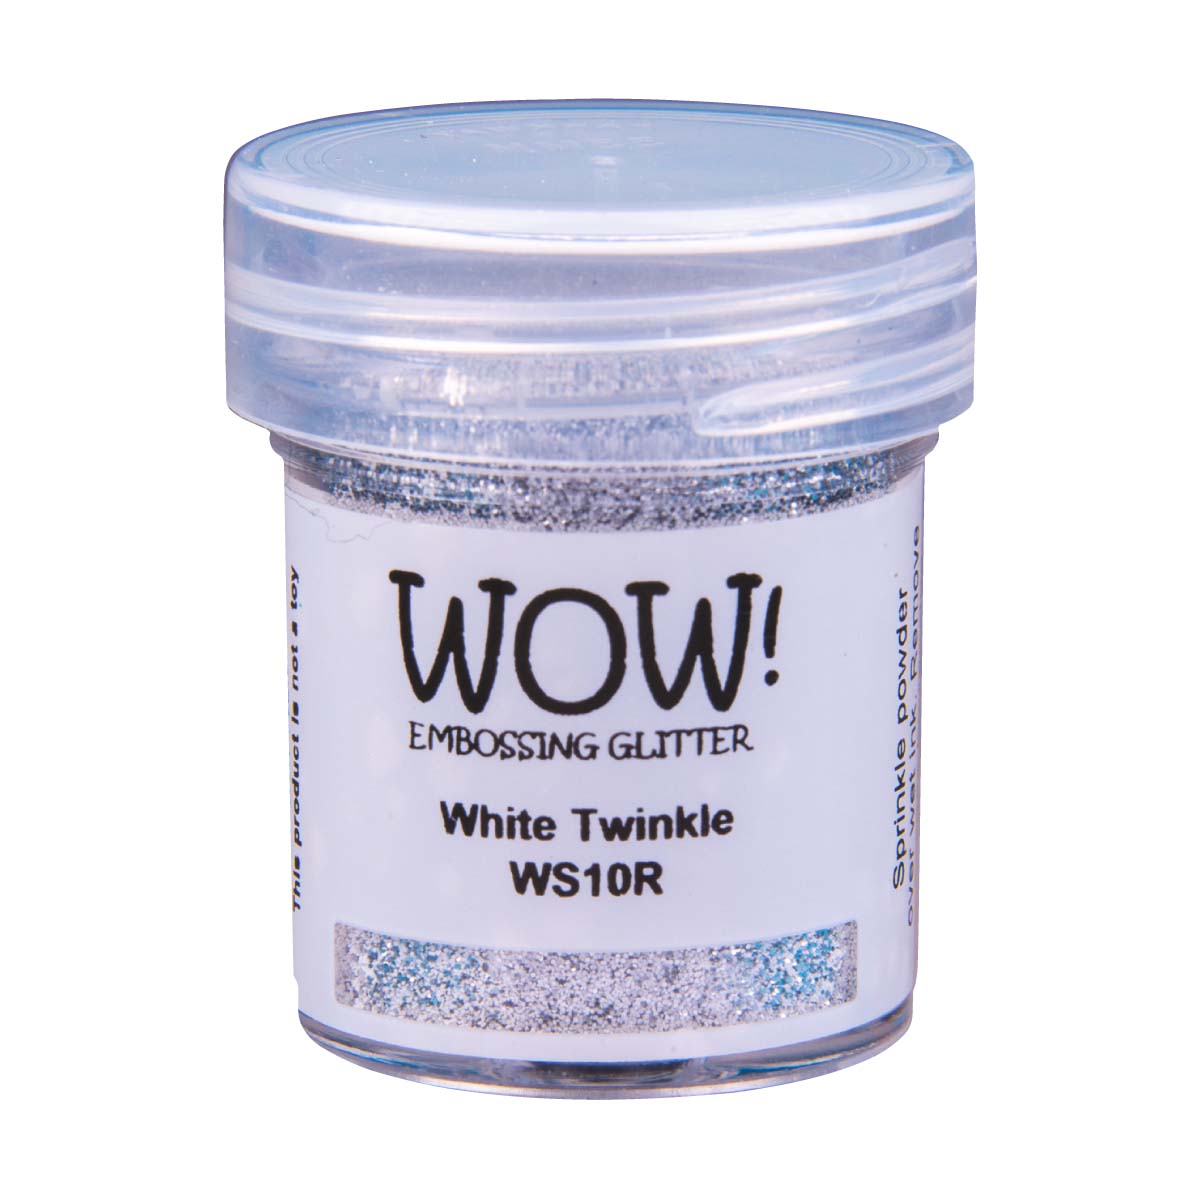 WOW Embossing Glitter, 15ml Jar - White Twinkle